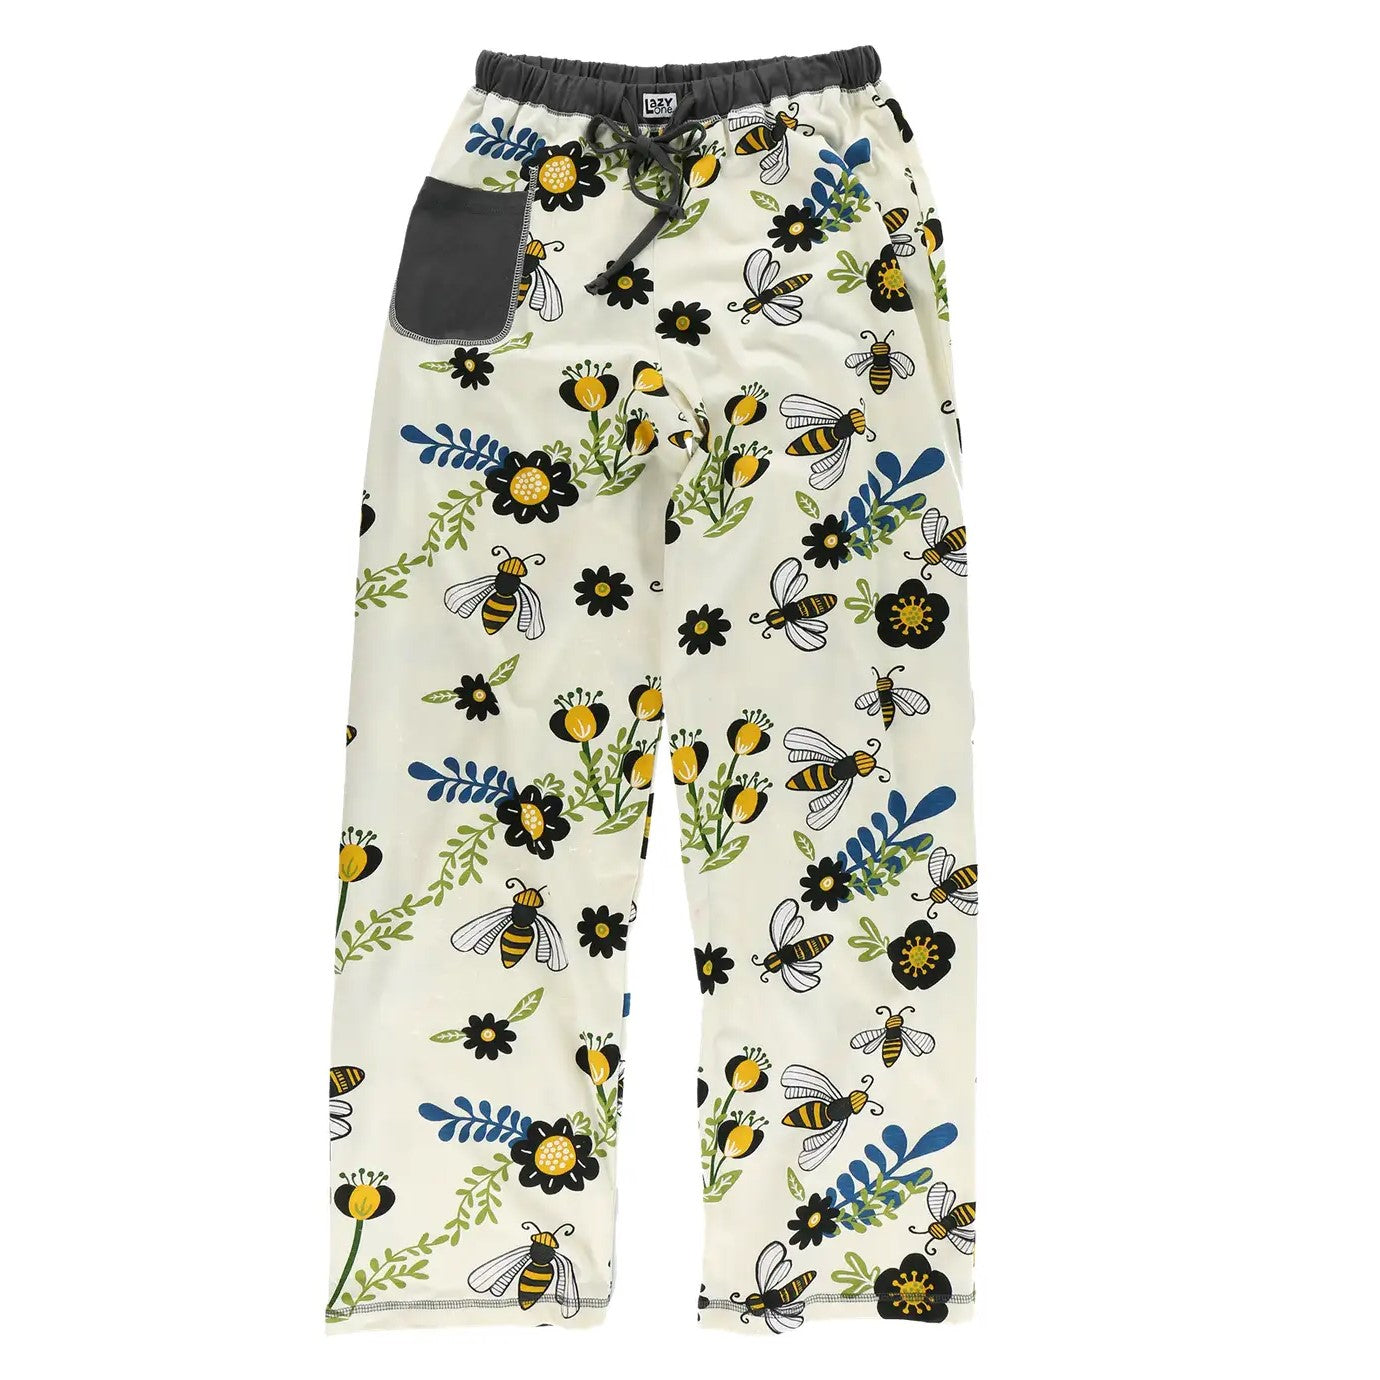 Queen Bee Pajama Pants - Womens